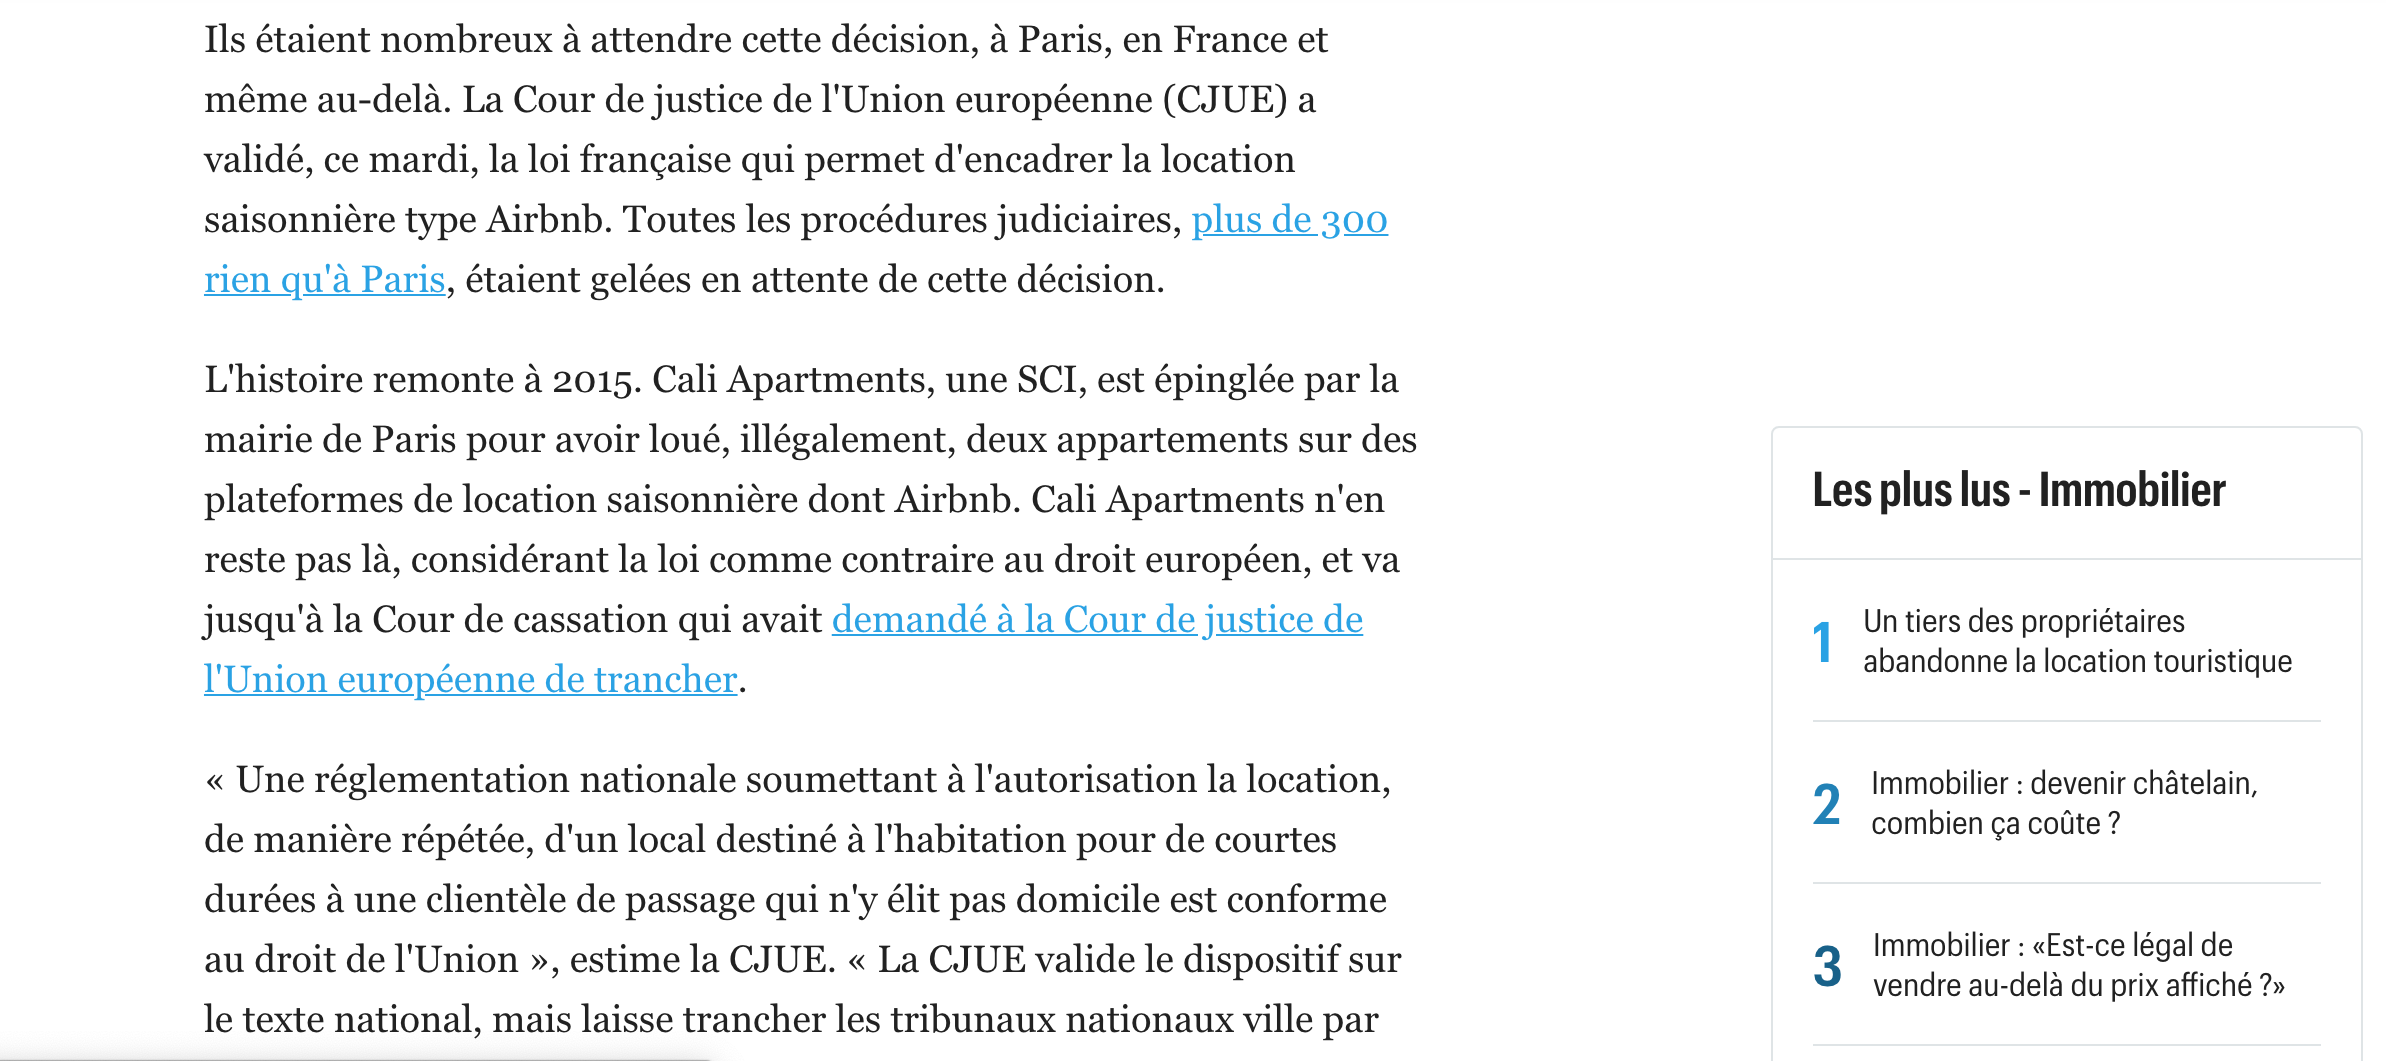 Le Parisien airbnb CJUE ville de paris